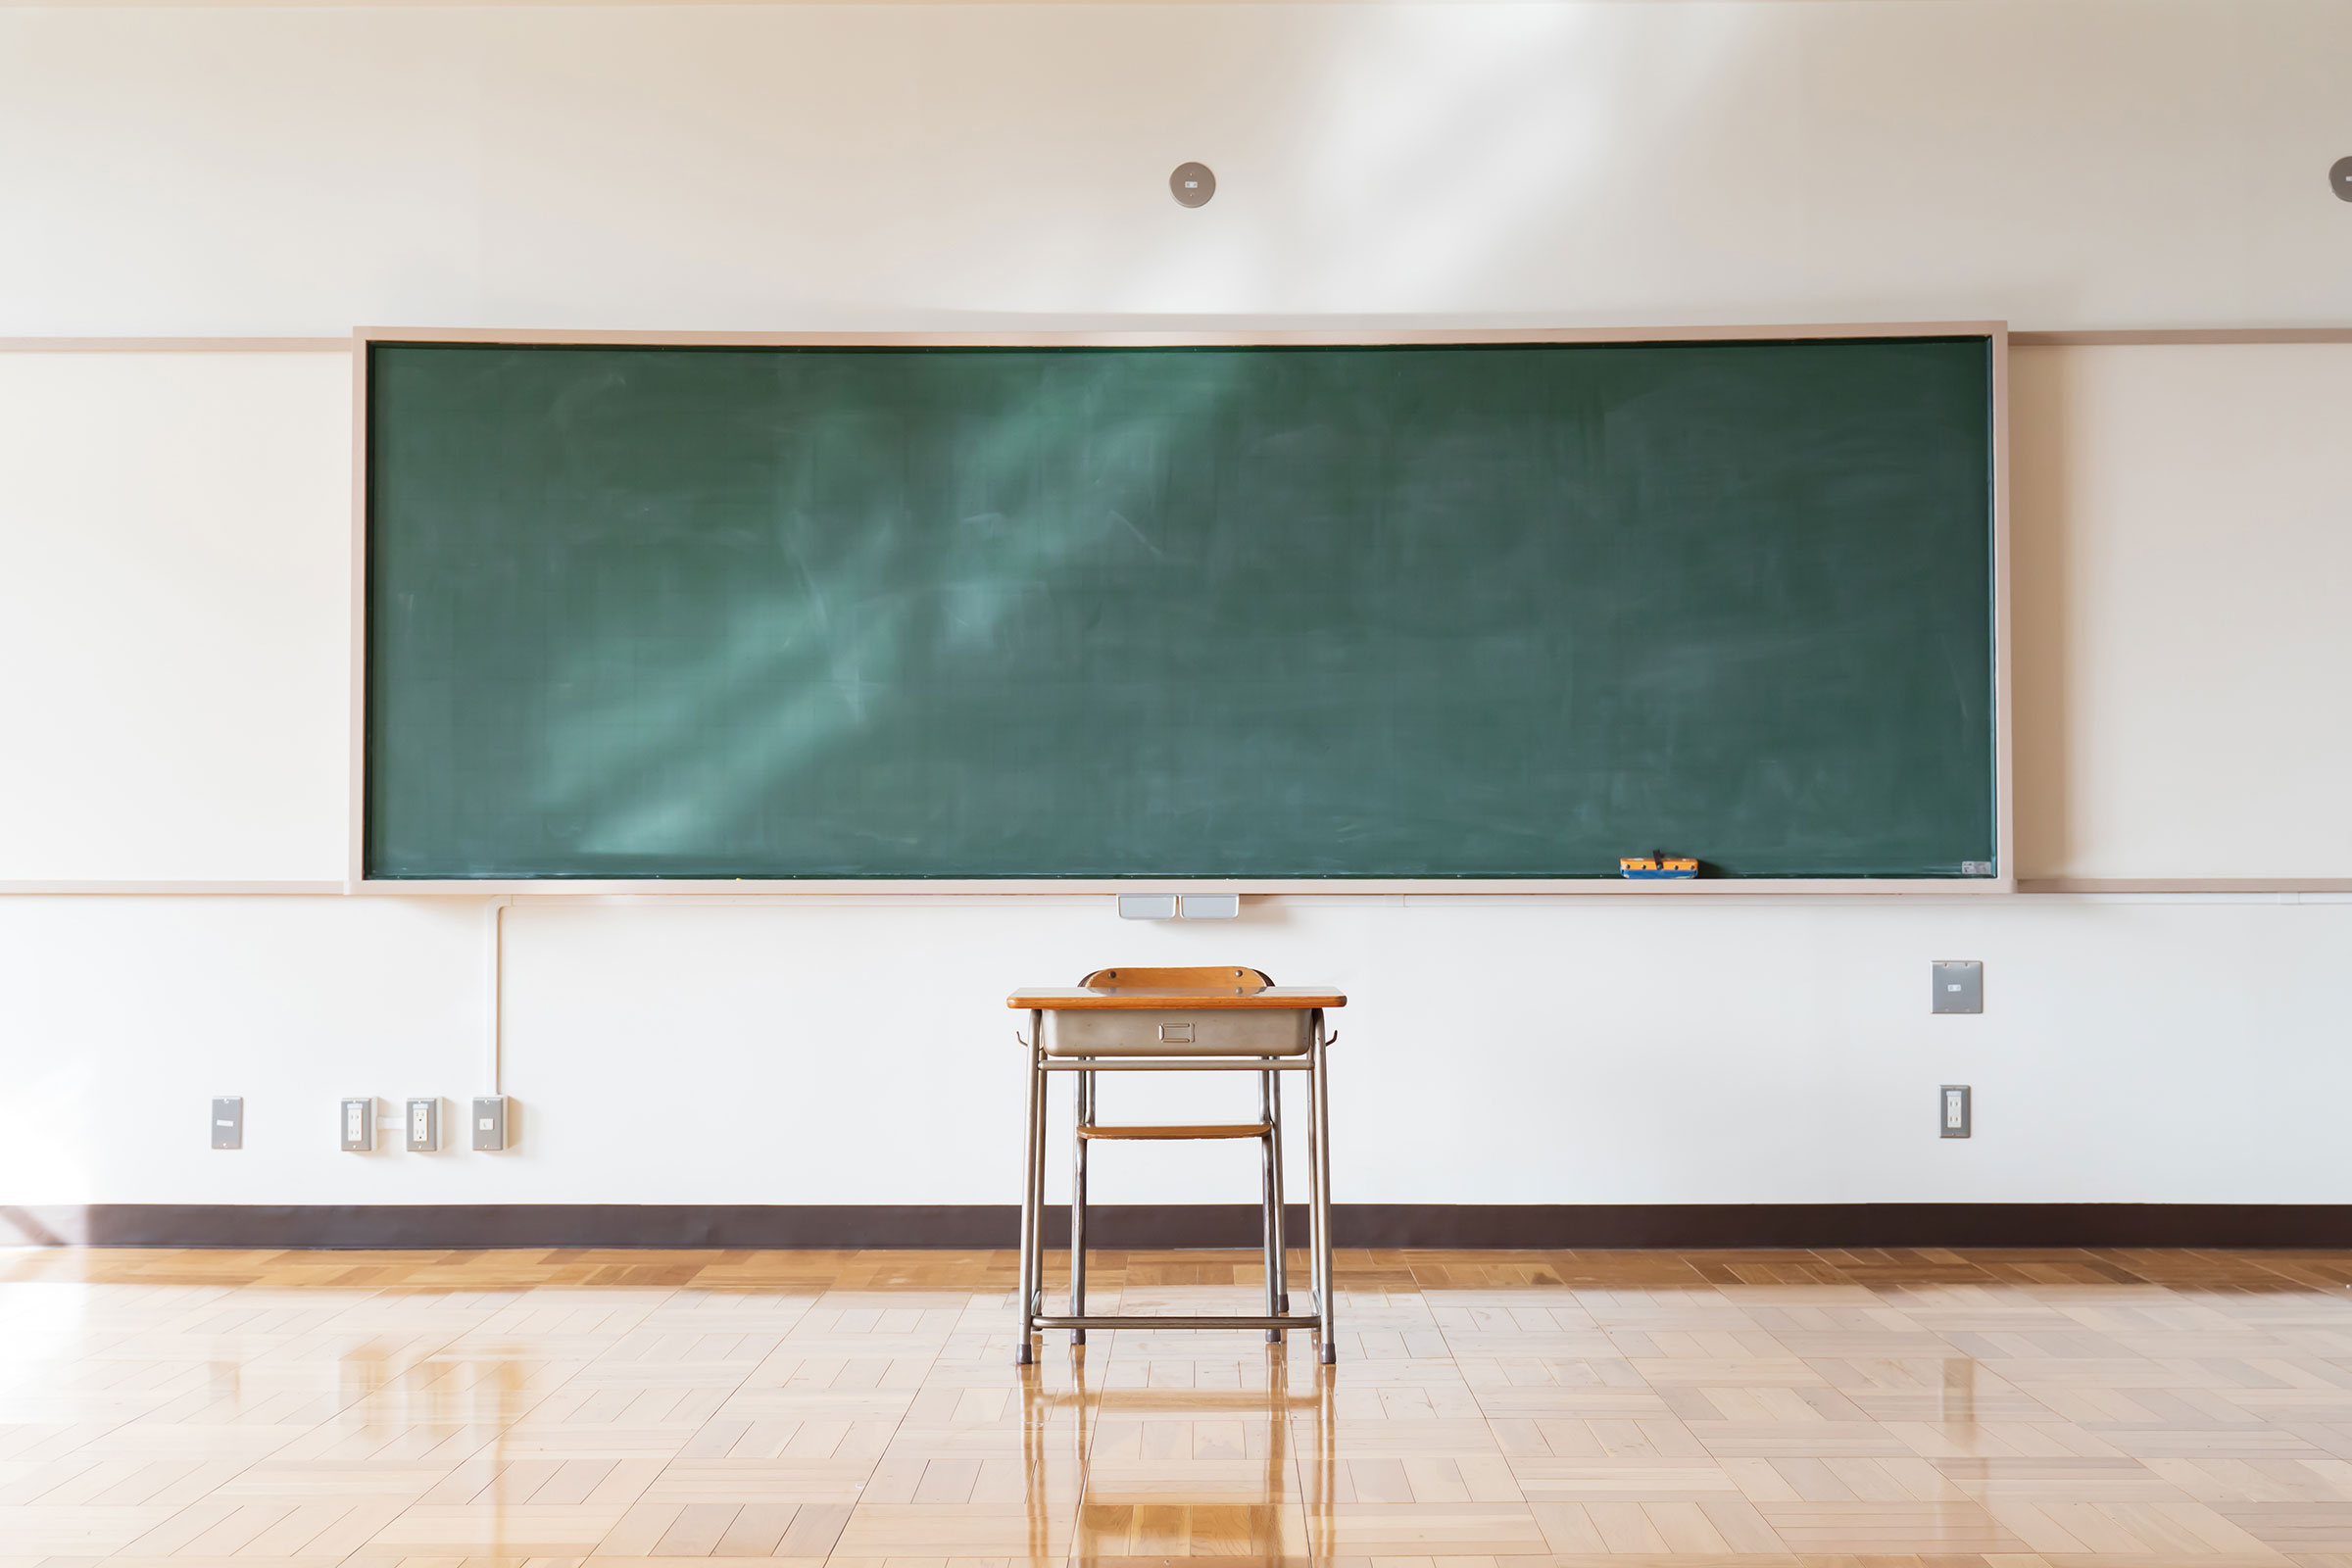 A single desk sitting in front of a blackboard in a classroom